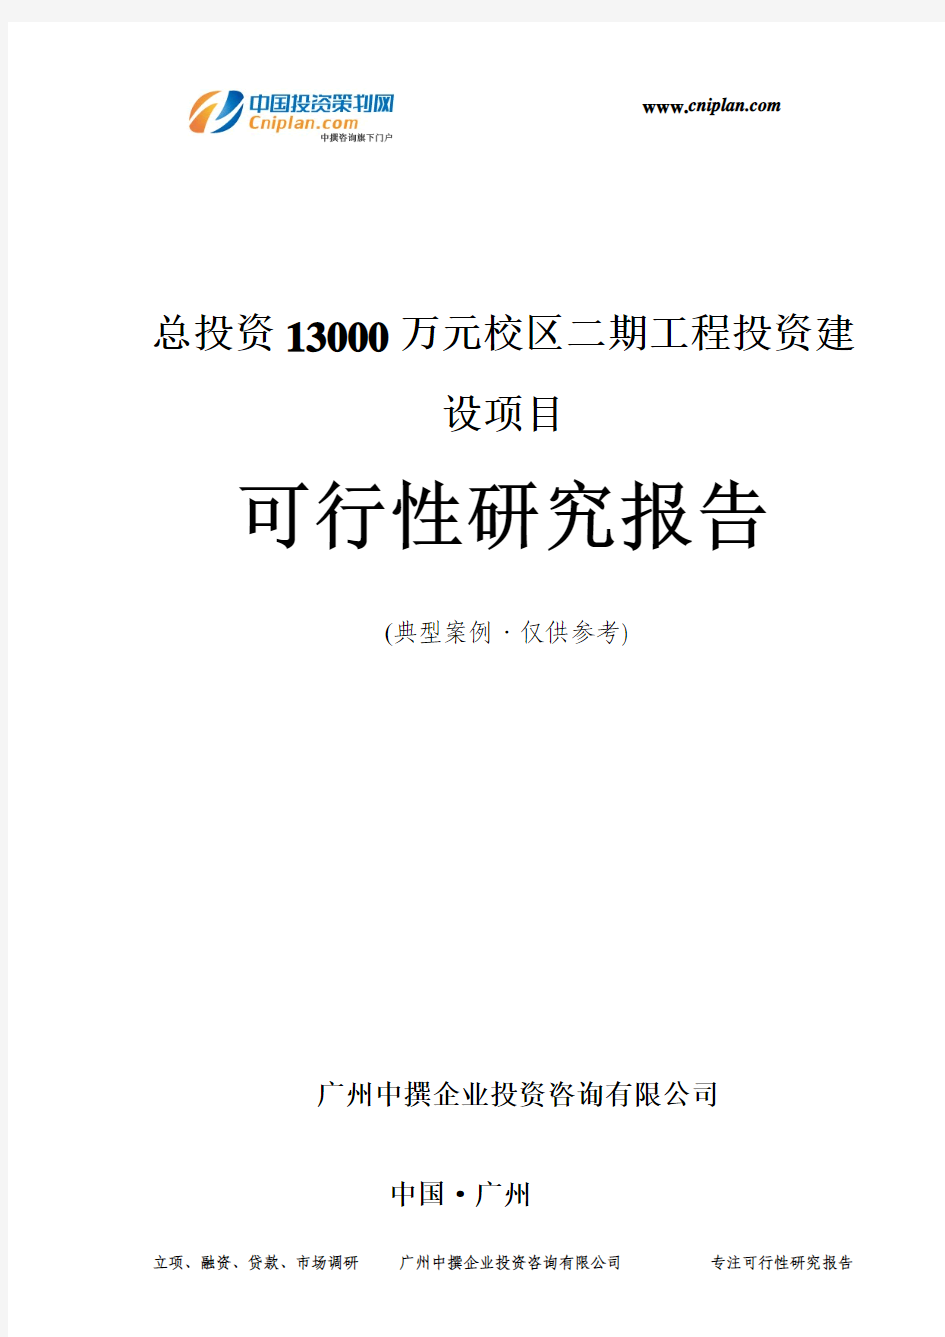 总投资13000万元校区二期工程投资建设项目可行性研究报告-广州中撰咨询